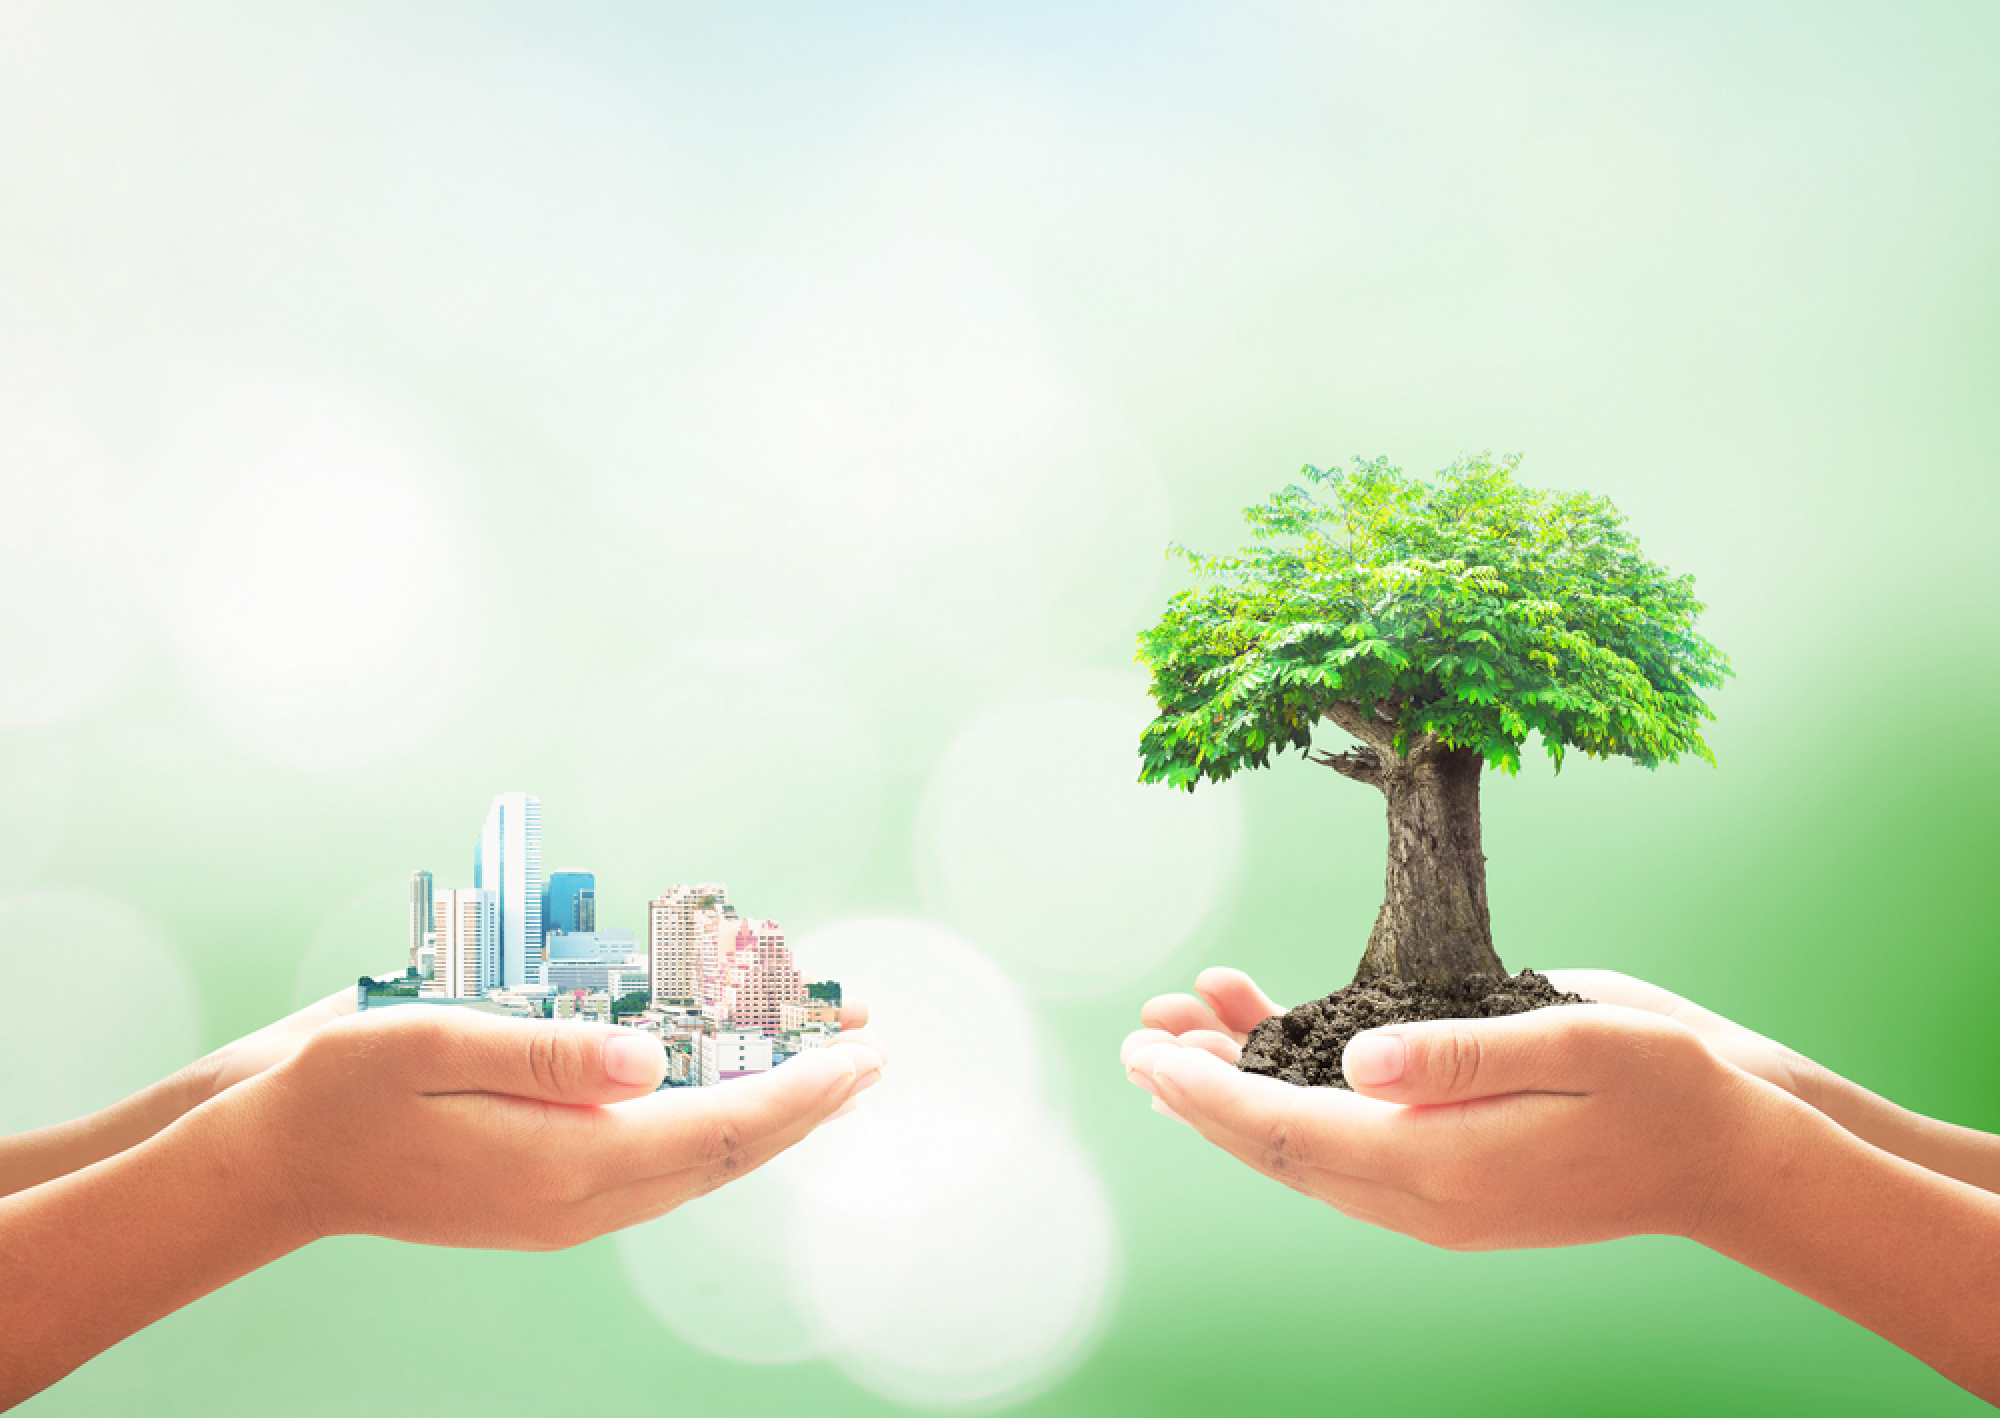 Le pinel+, ou, loi Pinel 2023 relance l’investissement dans des programmes immobiliers durables